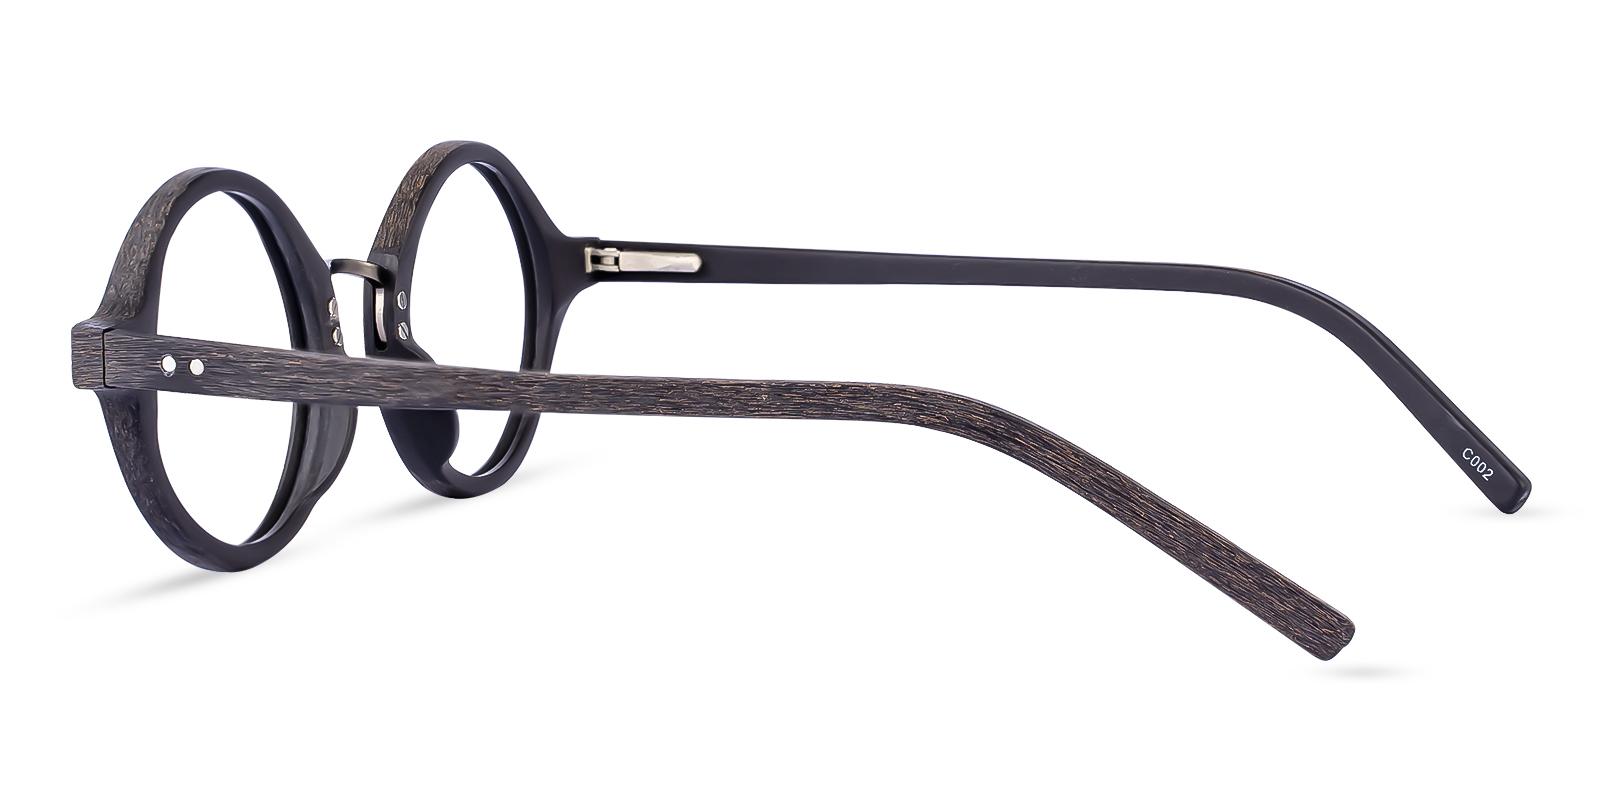 Piggott Striped Acetate Eyeglasses , SpringHinges , UniversalBridgeFit Frames from ABBE Glasses